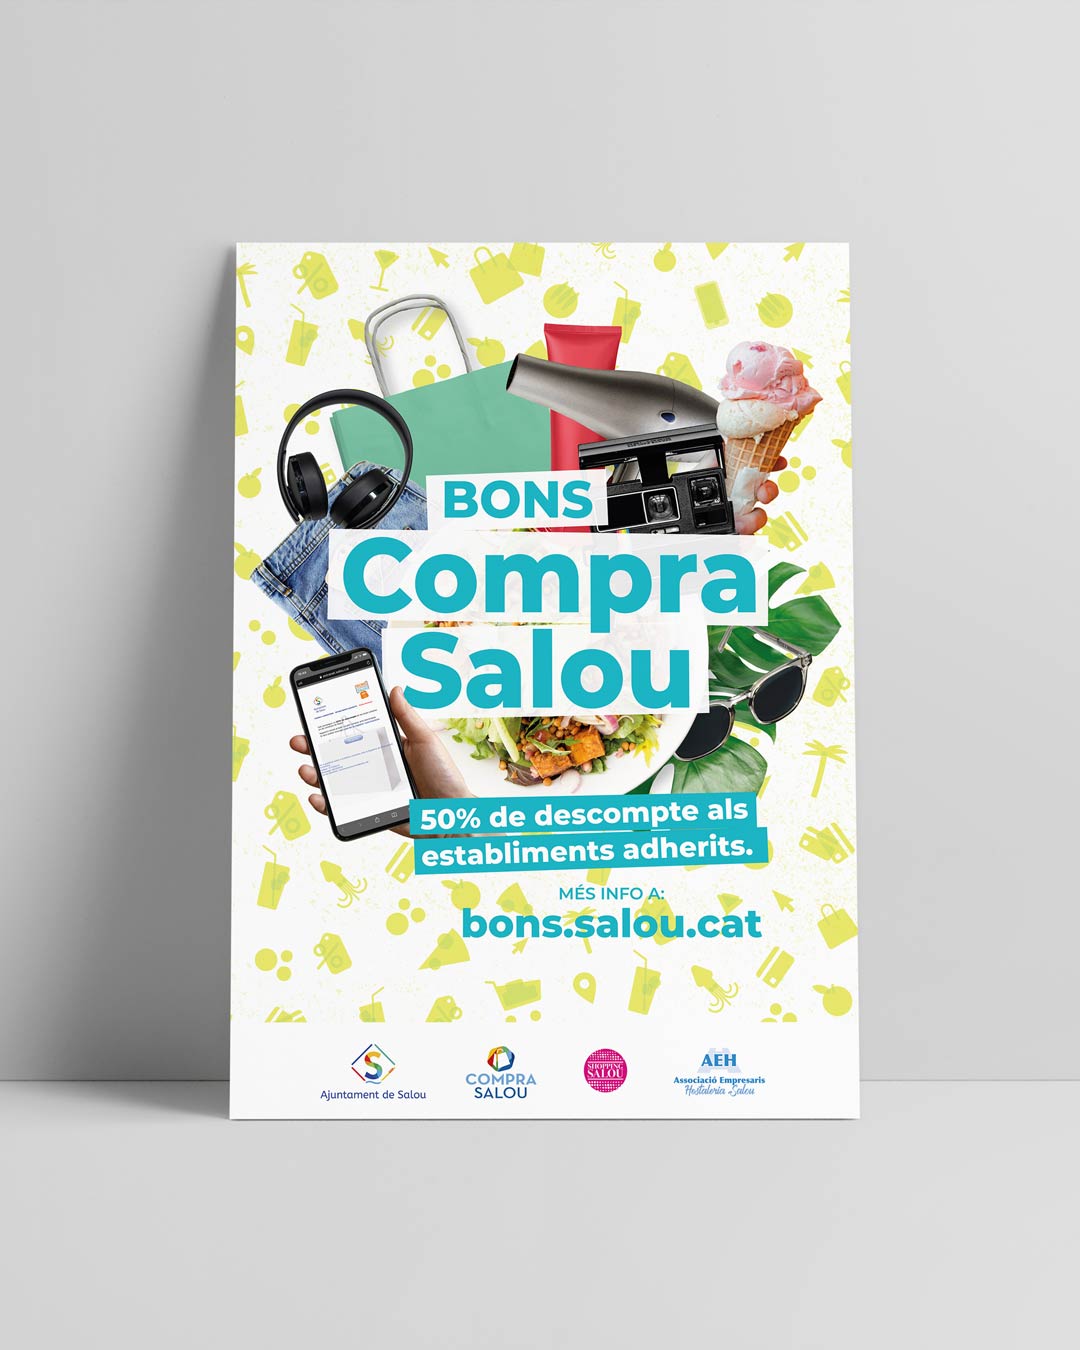 Disseny gràfic del cartell per a la campanya Bons Compra a Salou.